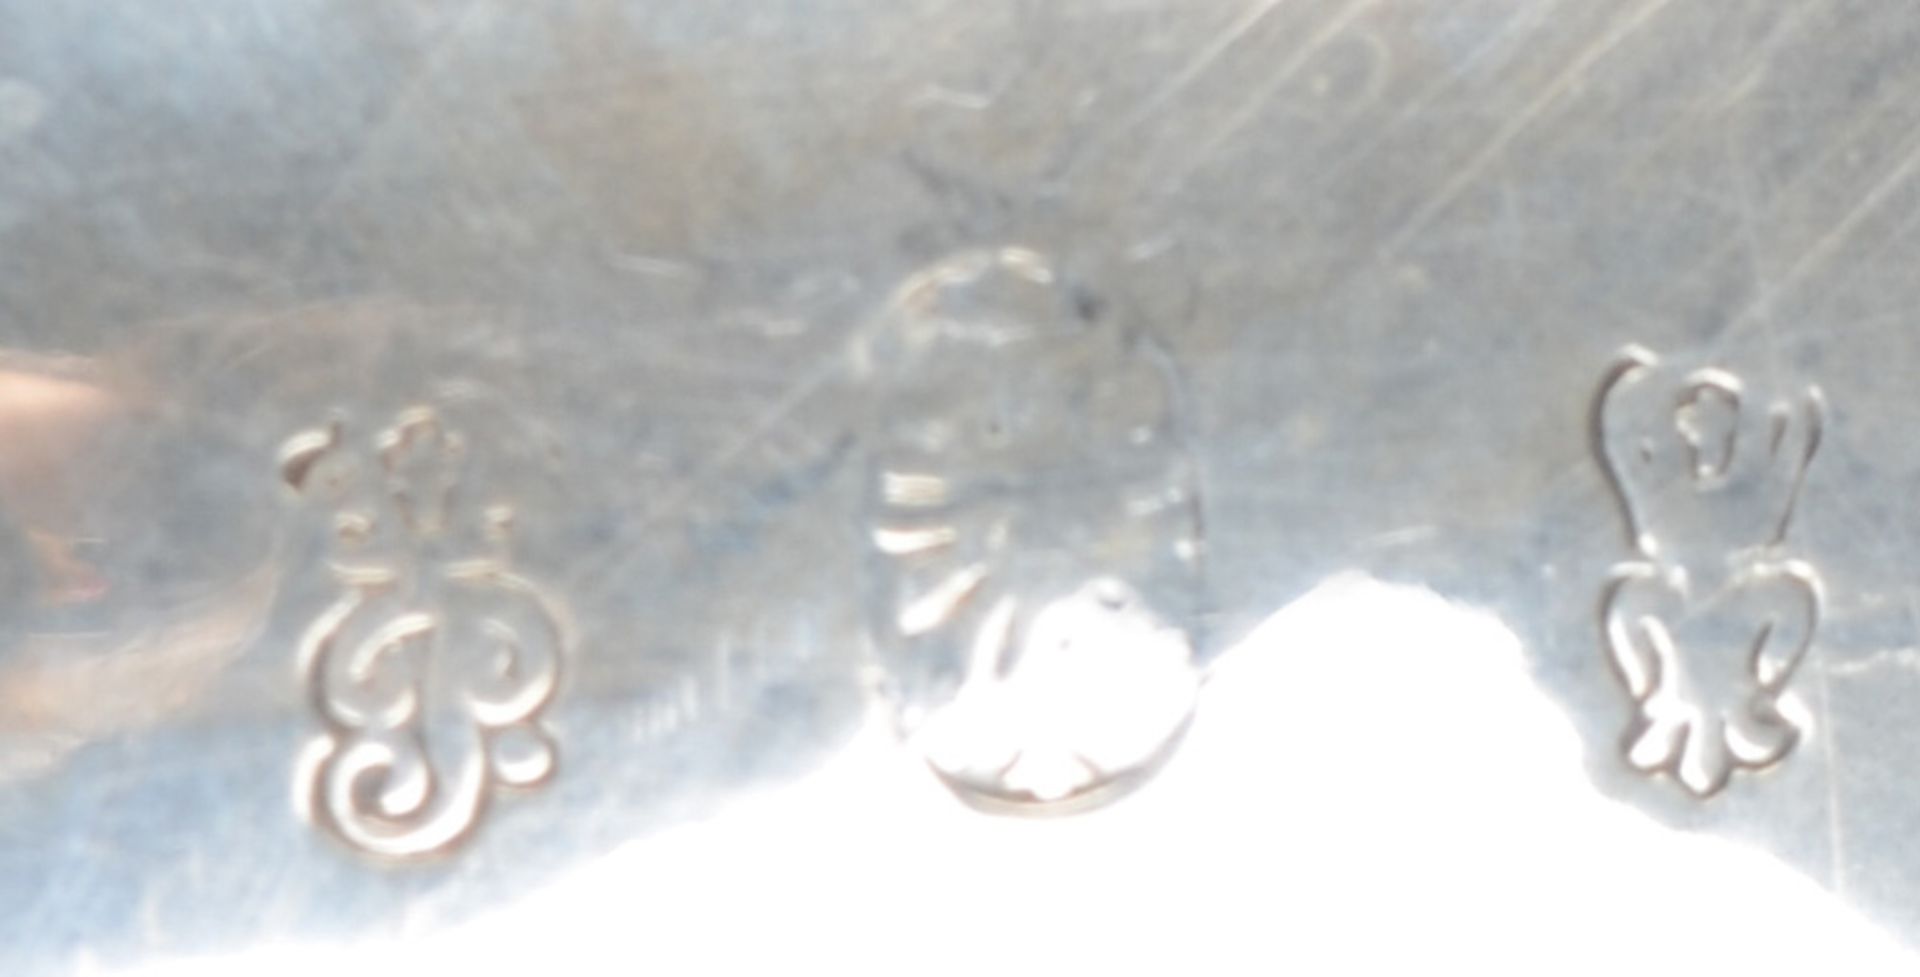 Saucière auf drei Füßen. Frankreich 19. Jh. Silber, ca. 330 g, am Boden gepunzt, H=13,5 cm. - Image 2 of 2